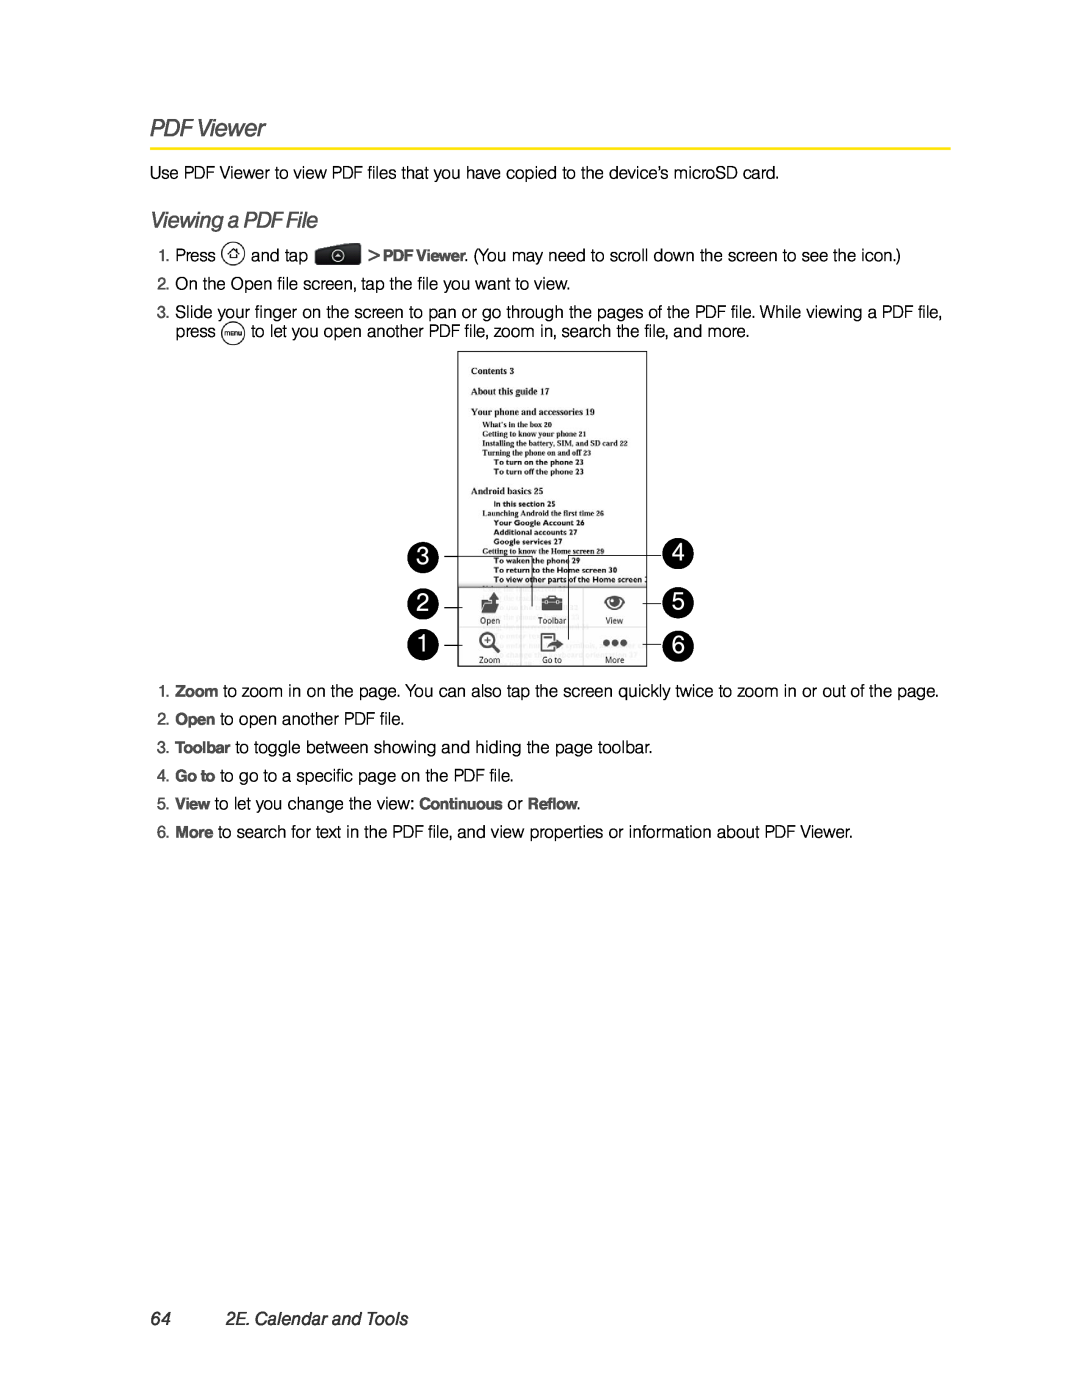 HTC PC36100, HTC EVO 4G manual Viewing a PDF File, 64 2E. Calendar and Tools 